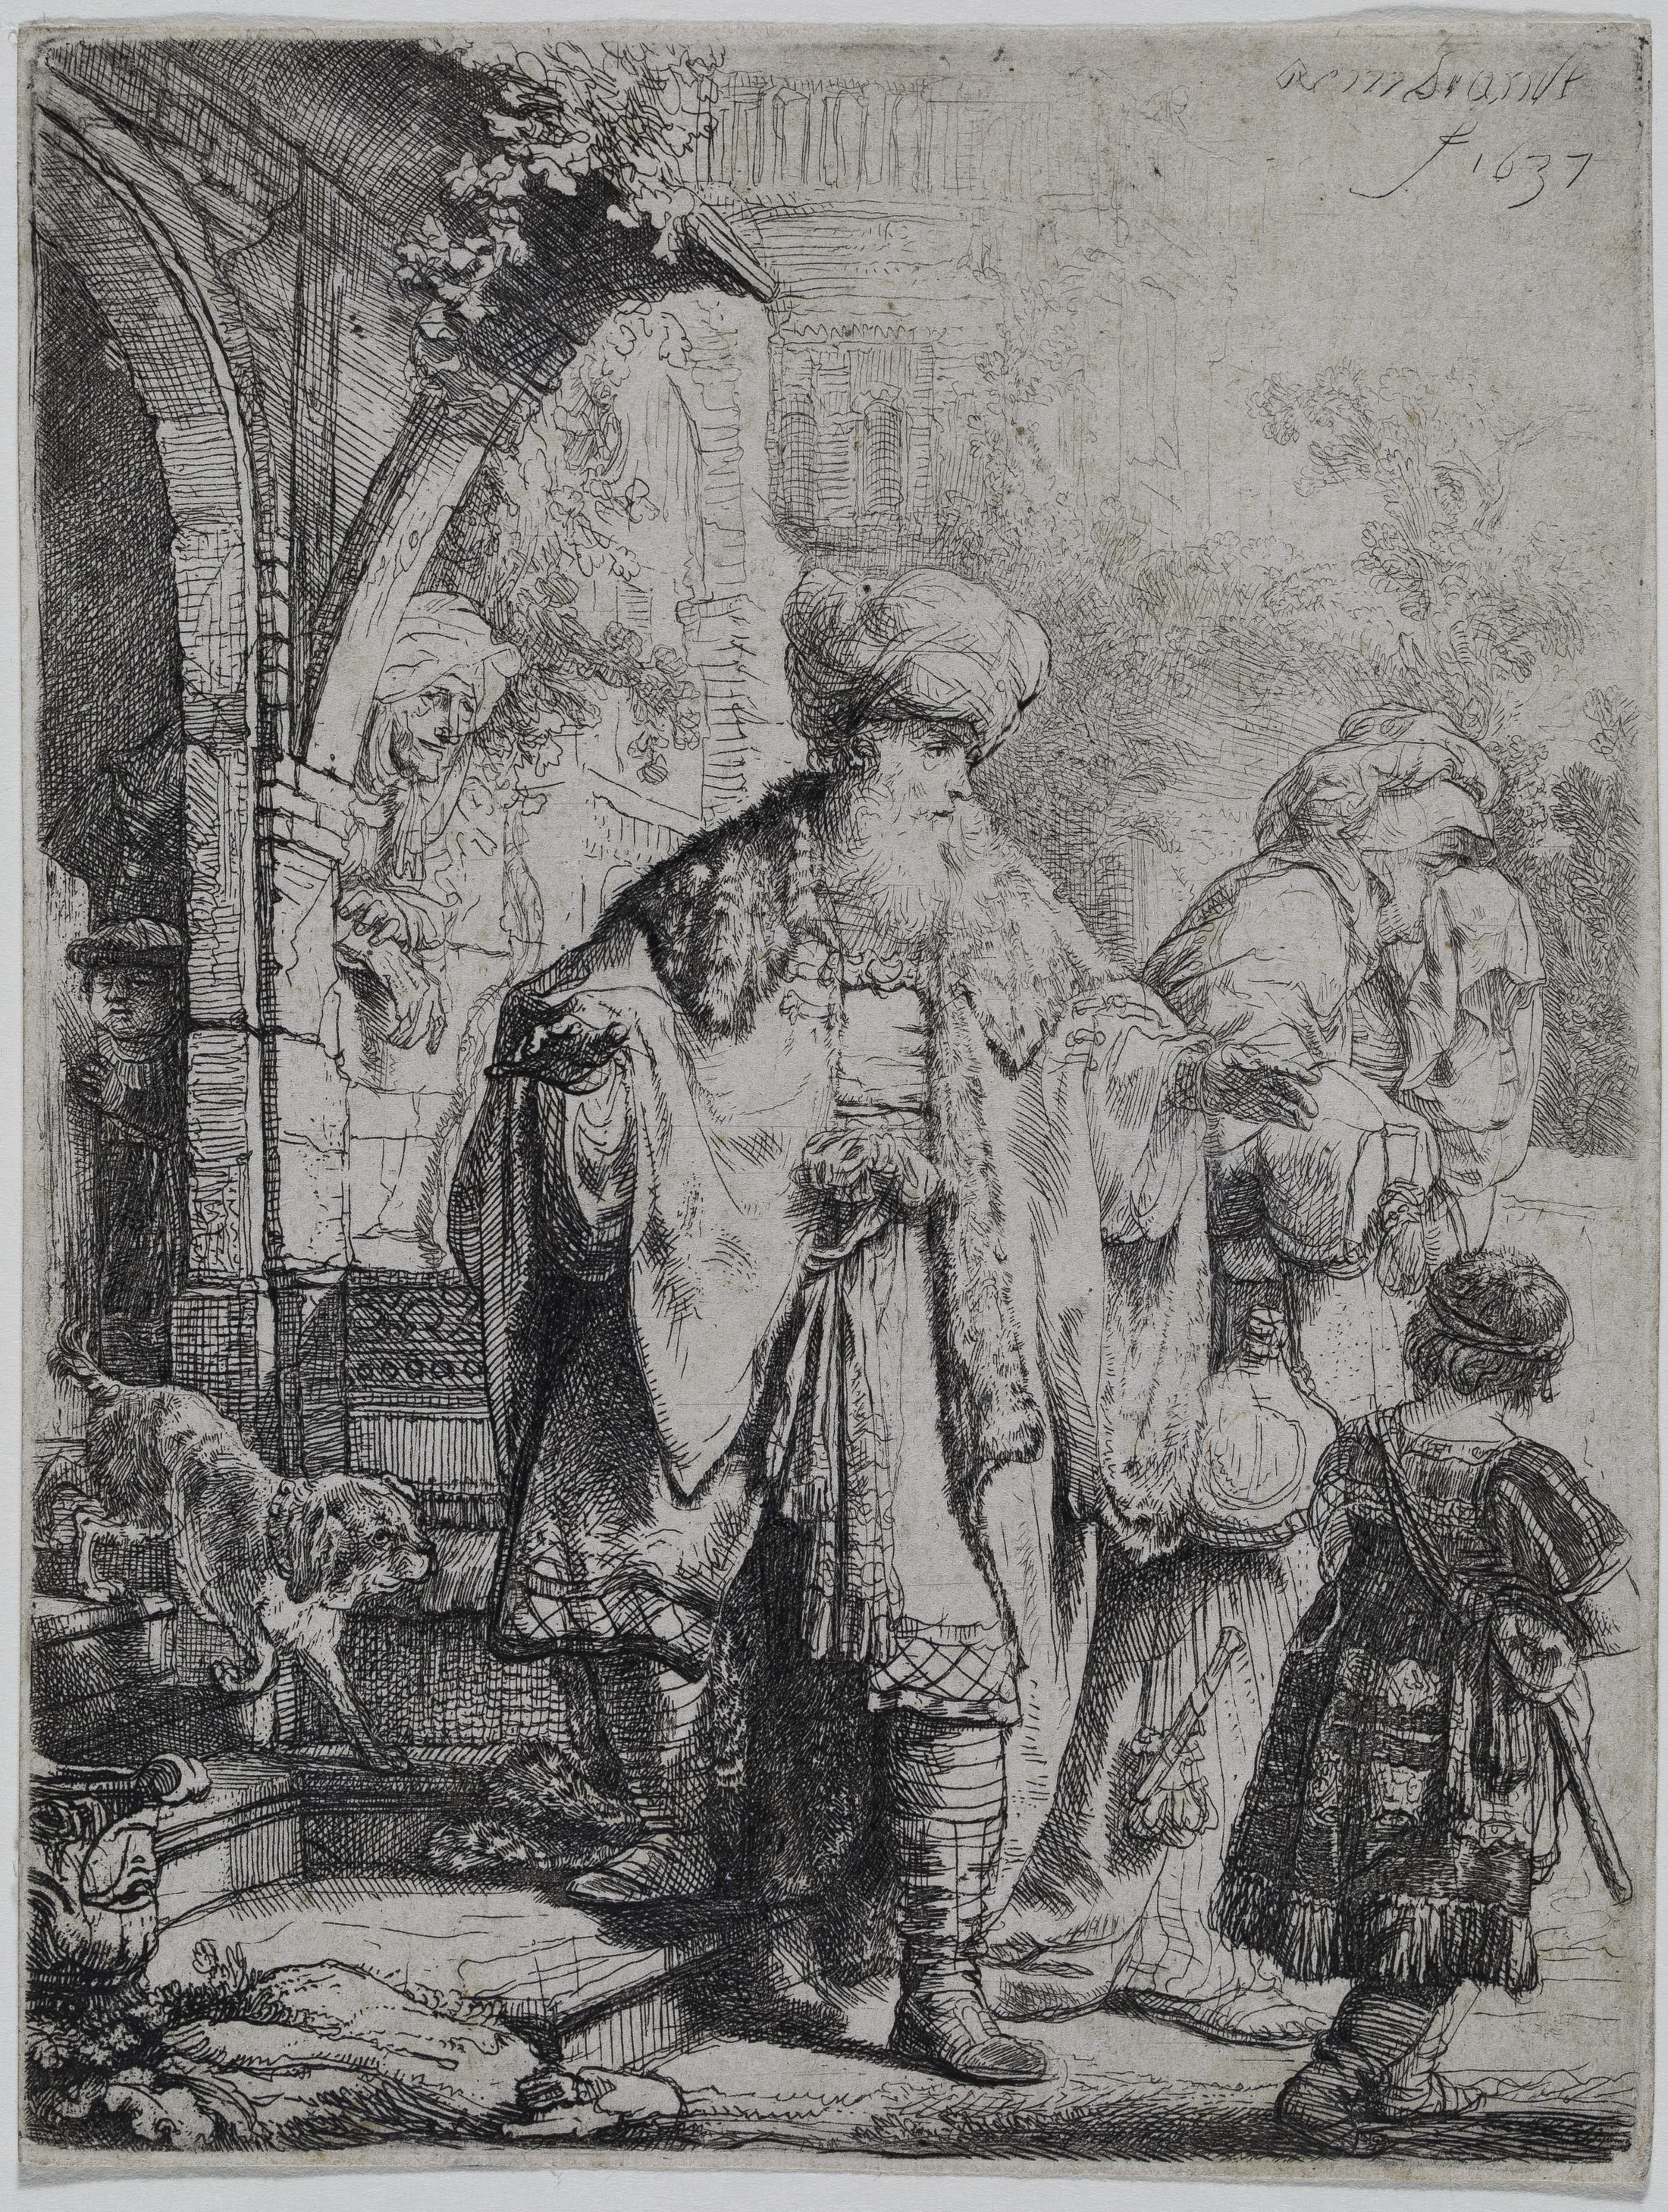 Zeichnung des Künstlers Rembrandt mit einem biblischen Gleichnis